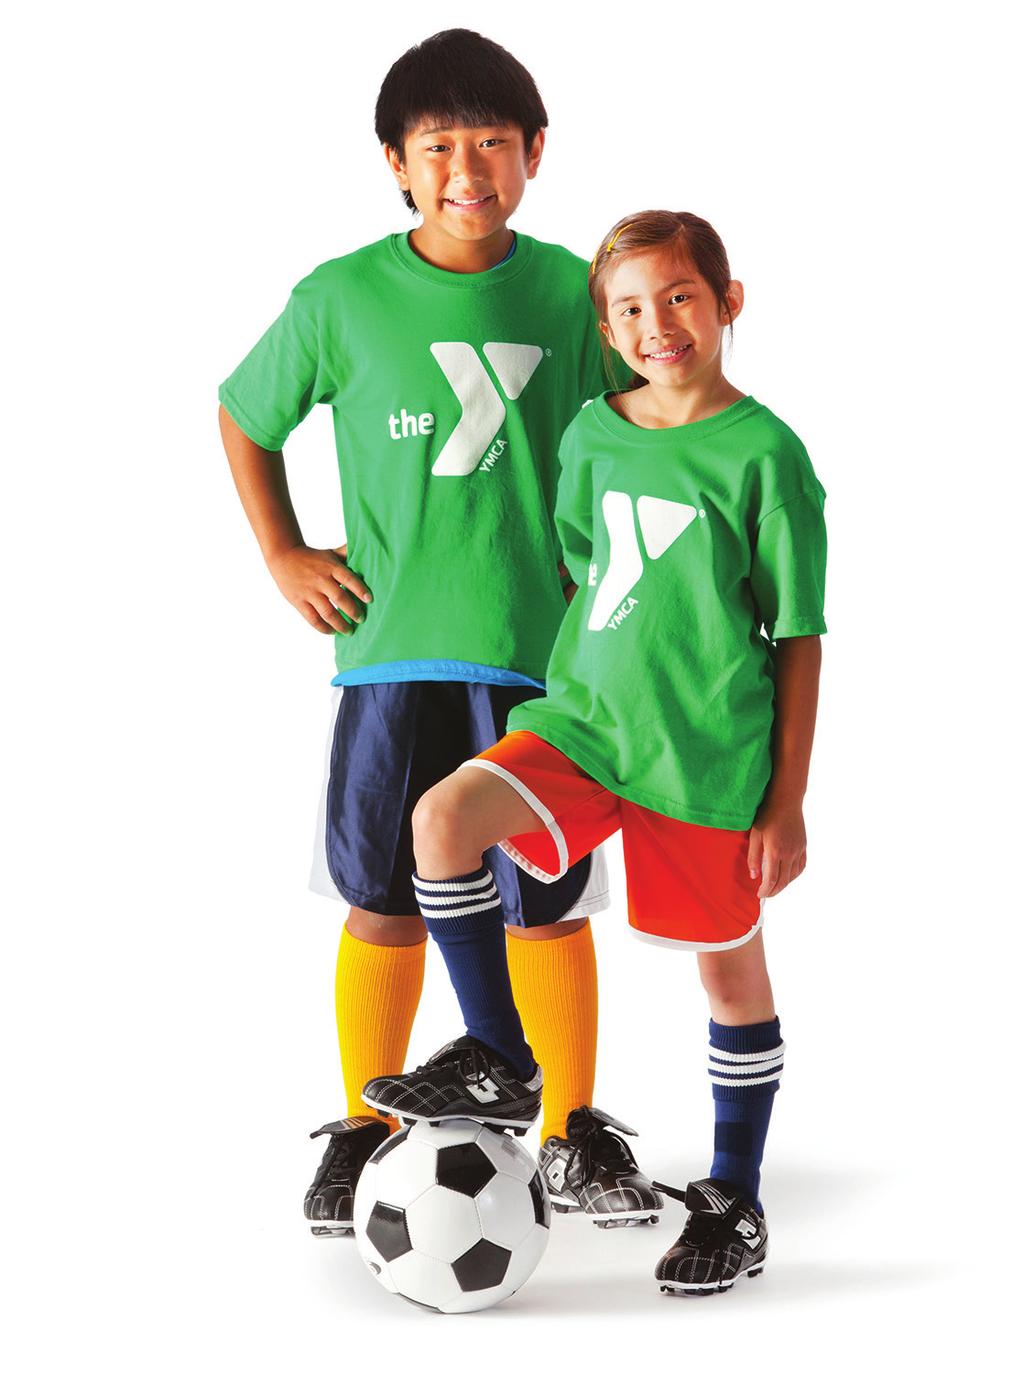 FÚTBOL PARA NIÑOS (Edad: 3-10) NO TE PIERDAS DE HACER UN GOL! El fútbol para niños es un deporte entretenido que combina juego en equipo y aptitudes individuales.